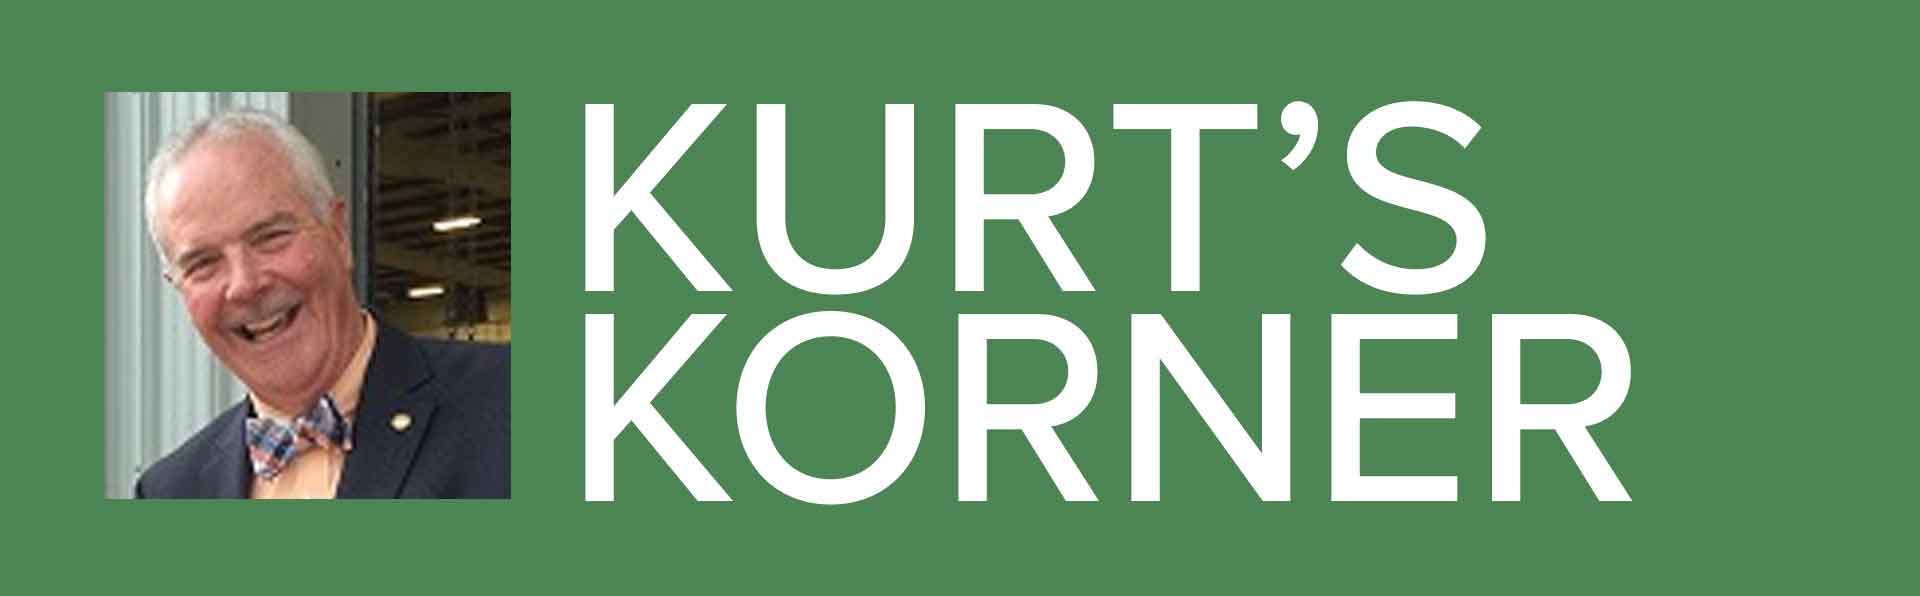 Kurt's Korner